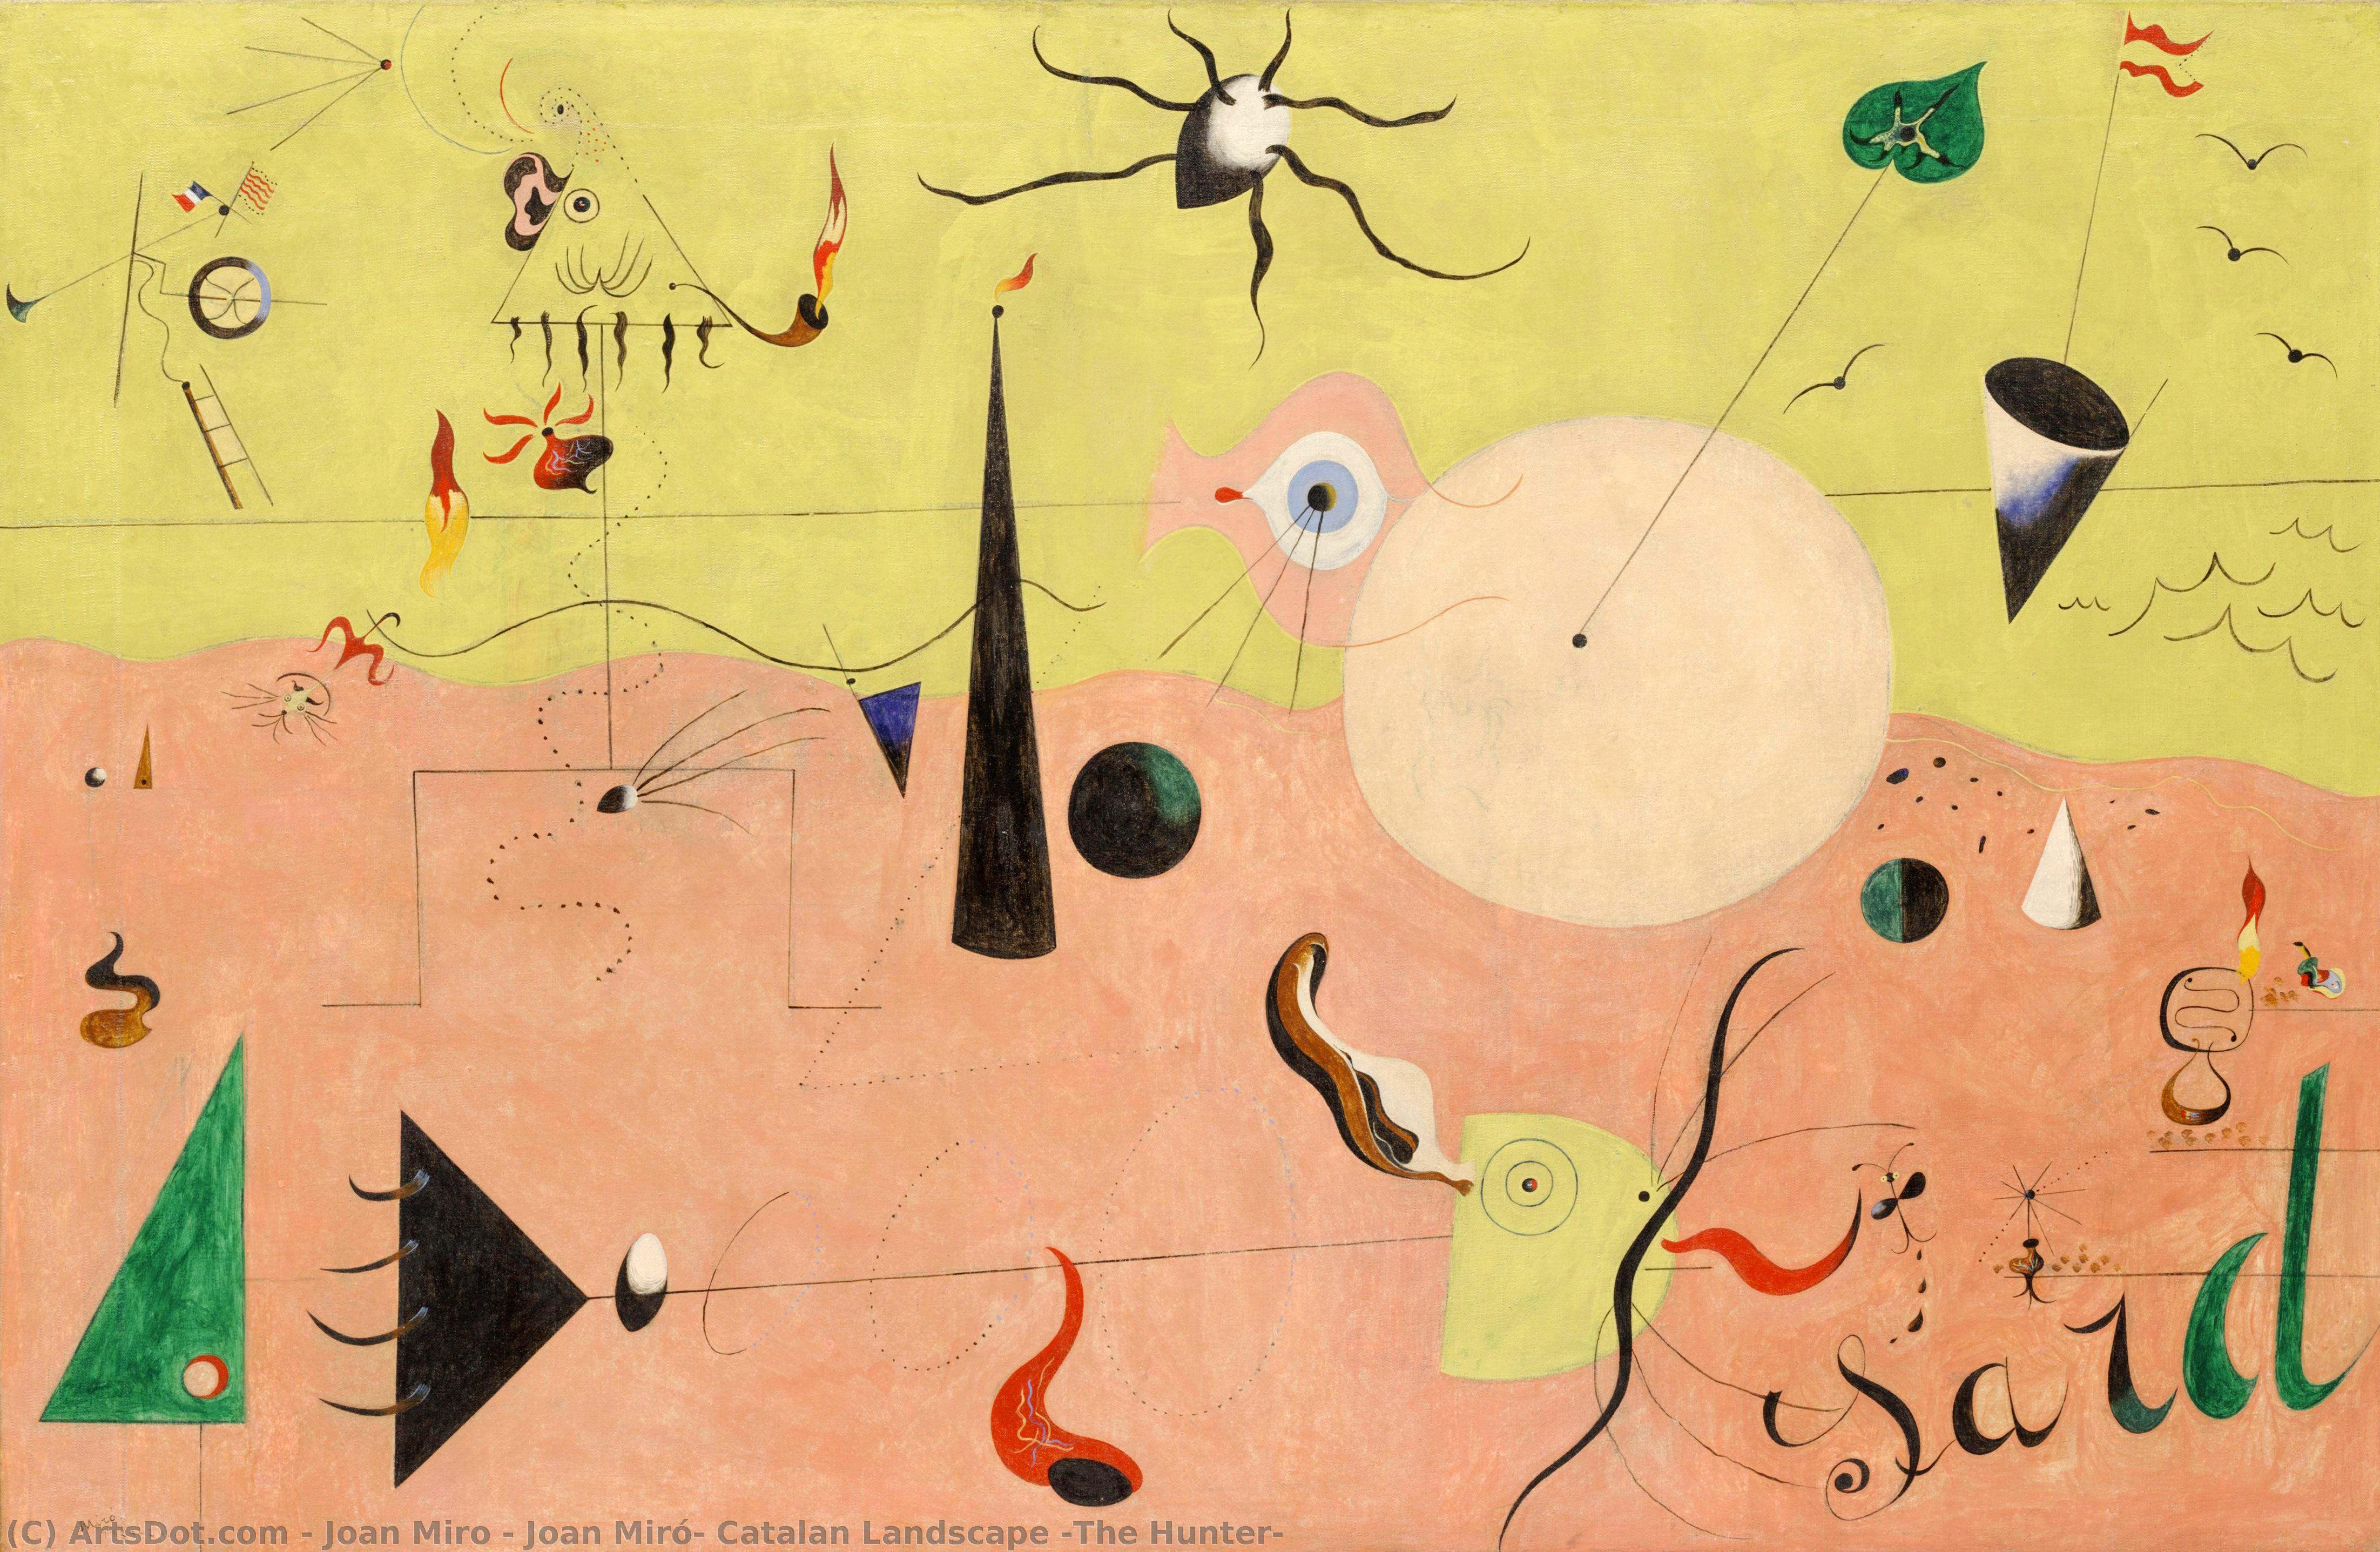 Получить Качественные Печати В Музеях Joan Miró - Каталонский пейзаж (The Hunter), 1924 по Joan Miró (Вдохновлен) (1893-1983, Spain) | ArtsDot.com